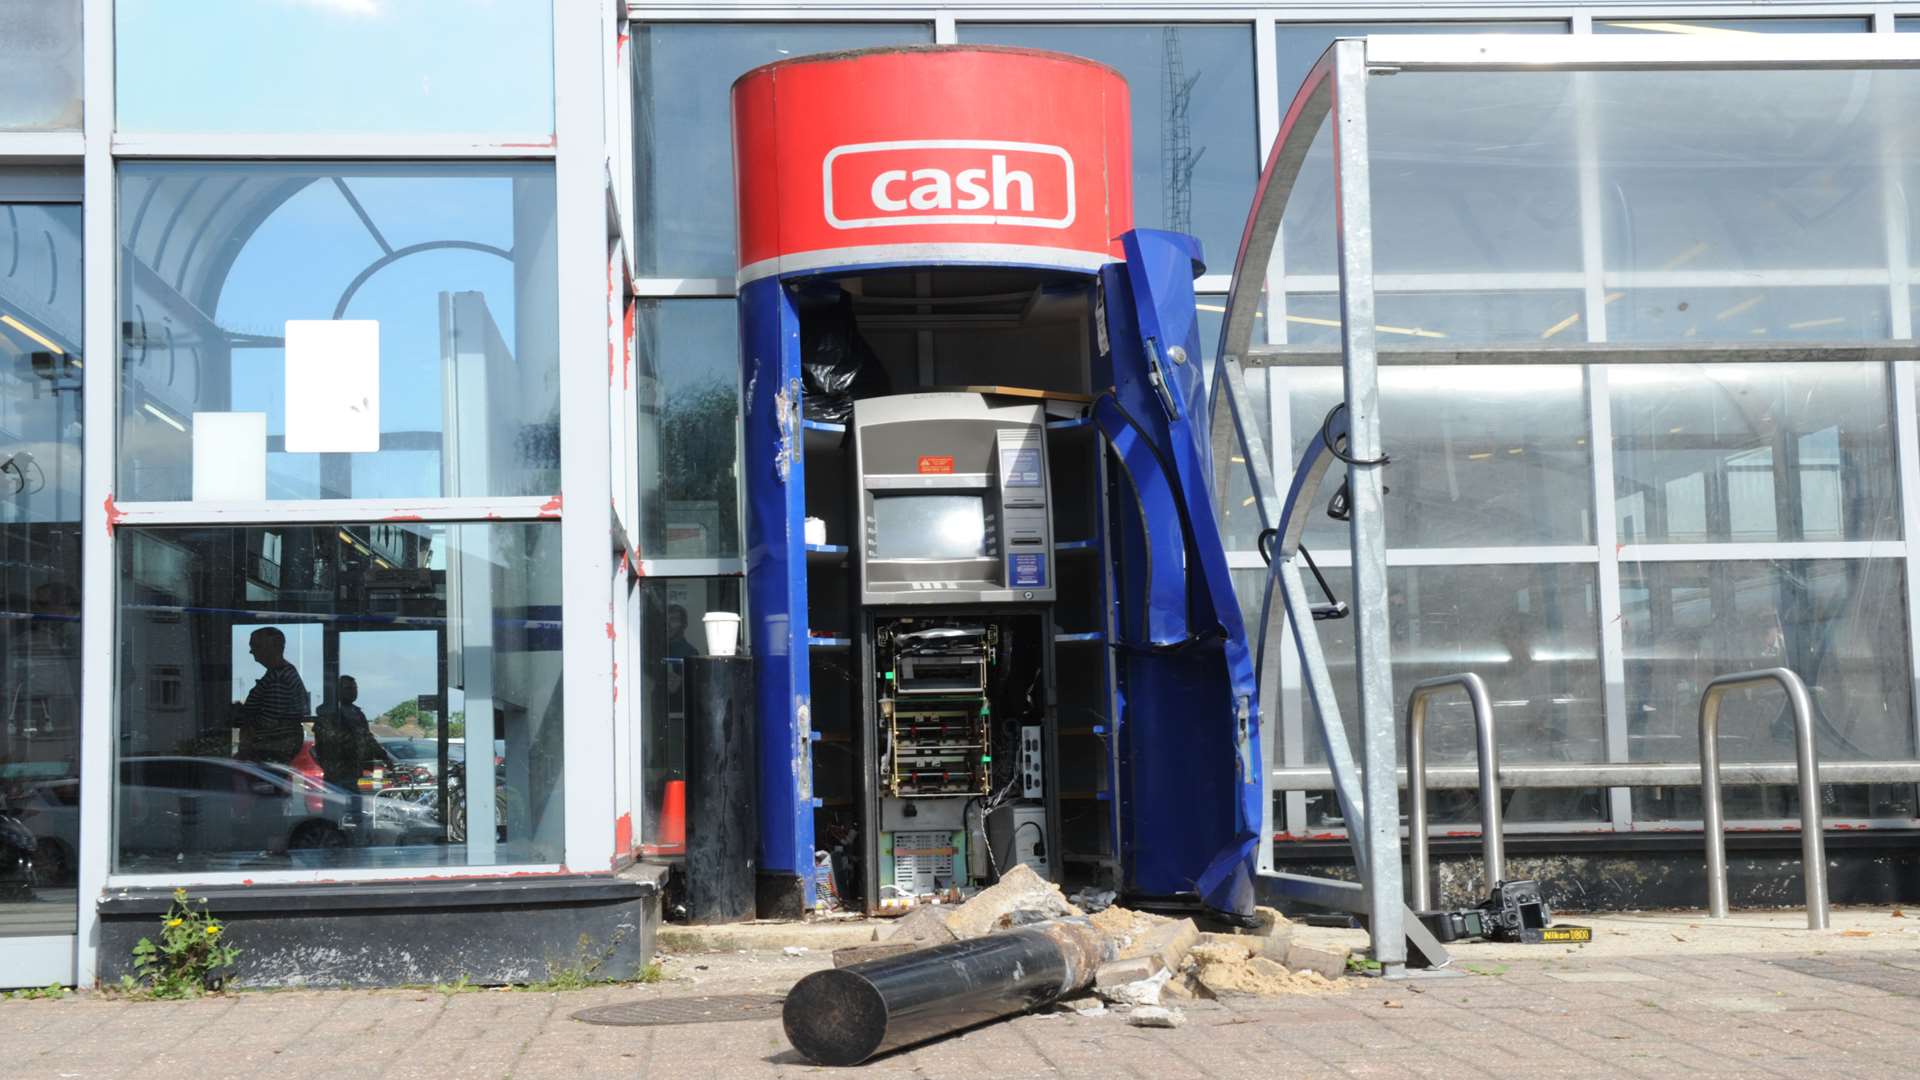 The ATM outside Rainham Station was ram raided